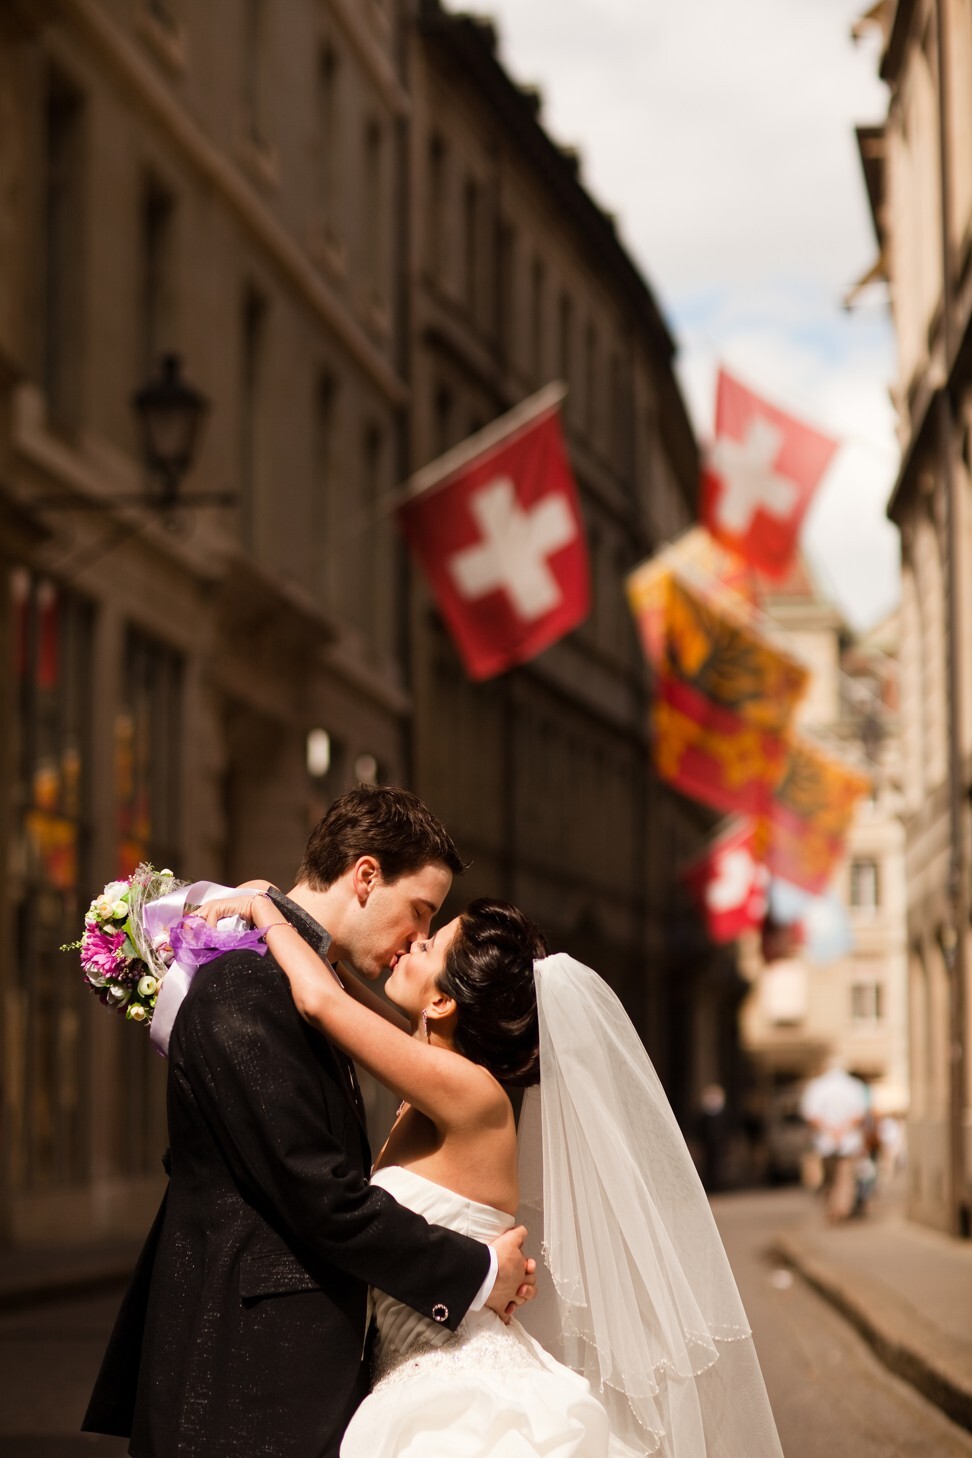 The Schilds were married in August 2010 in Switzerland.